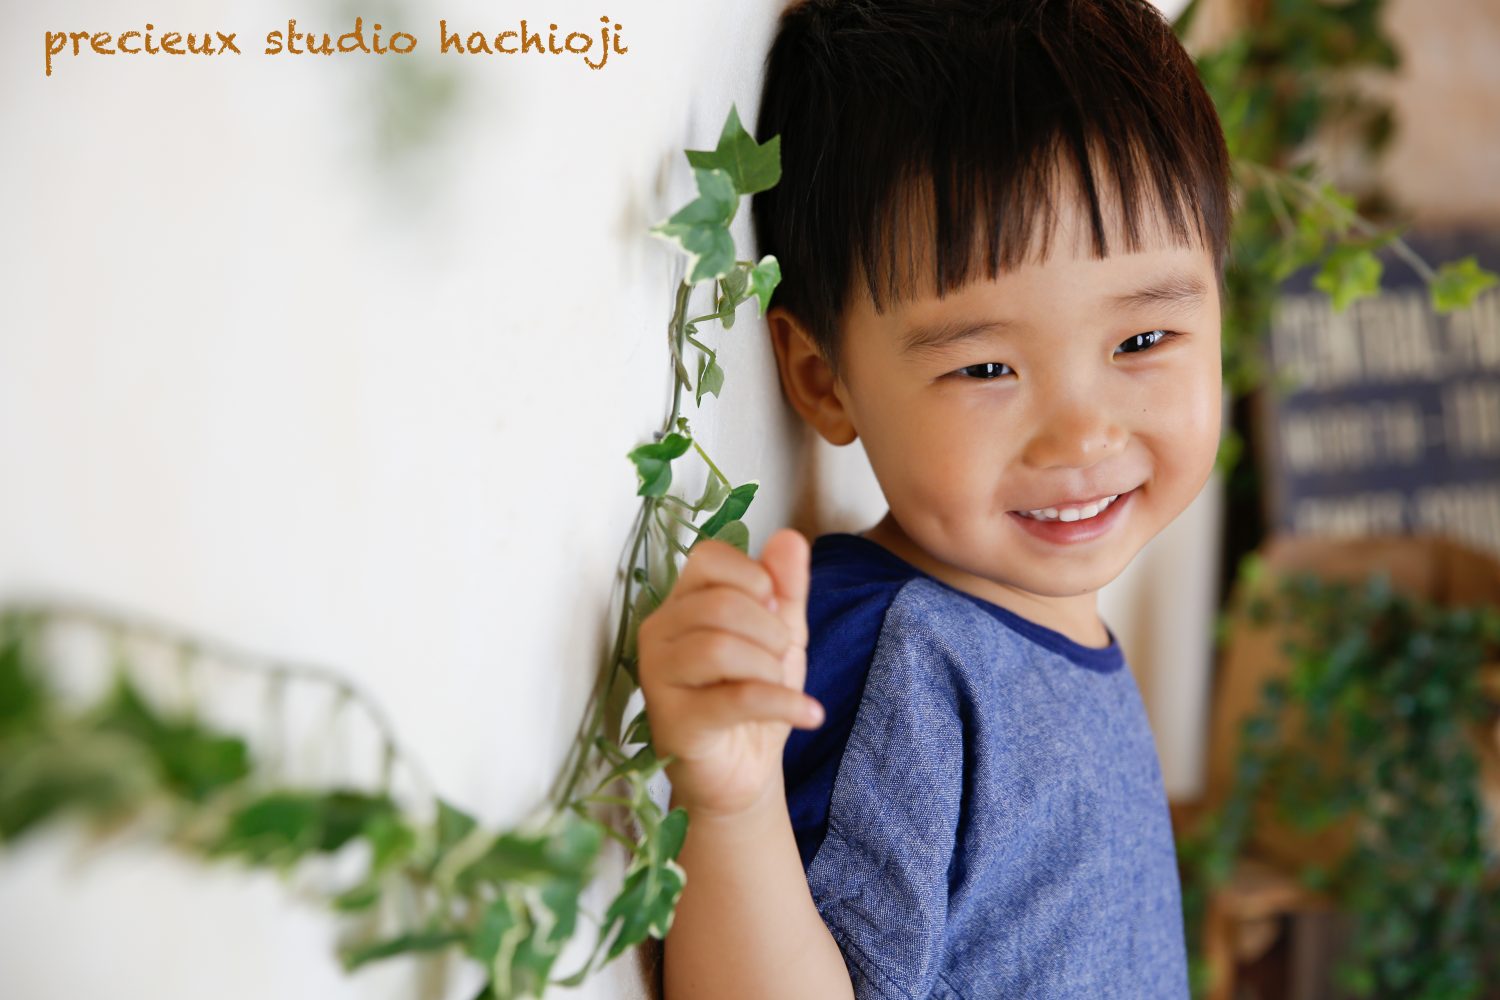 hachioji_12345-02